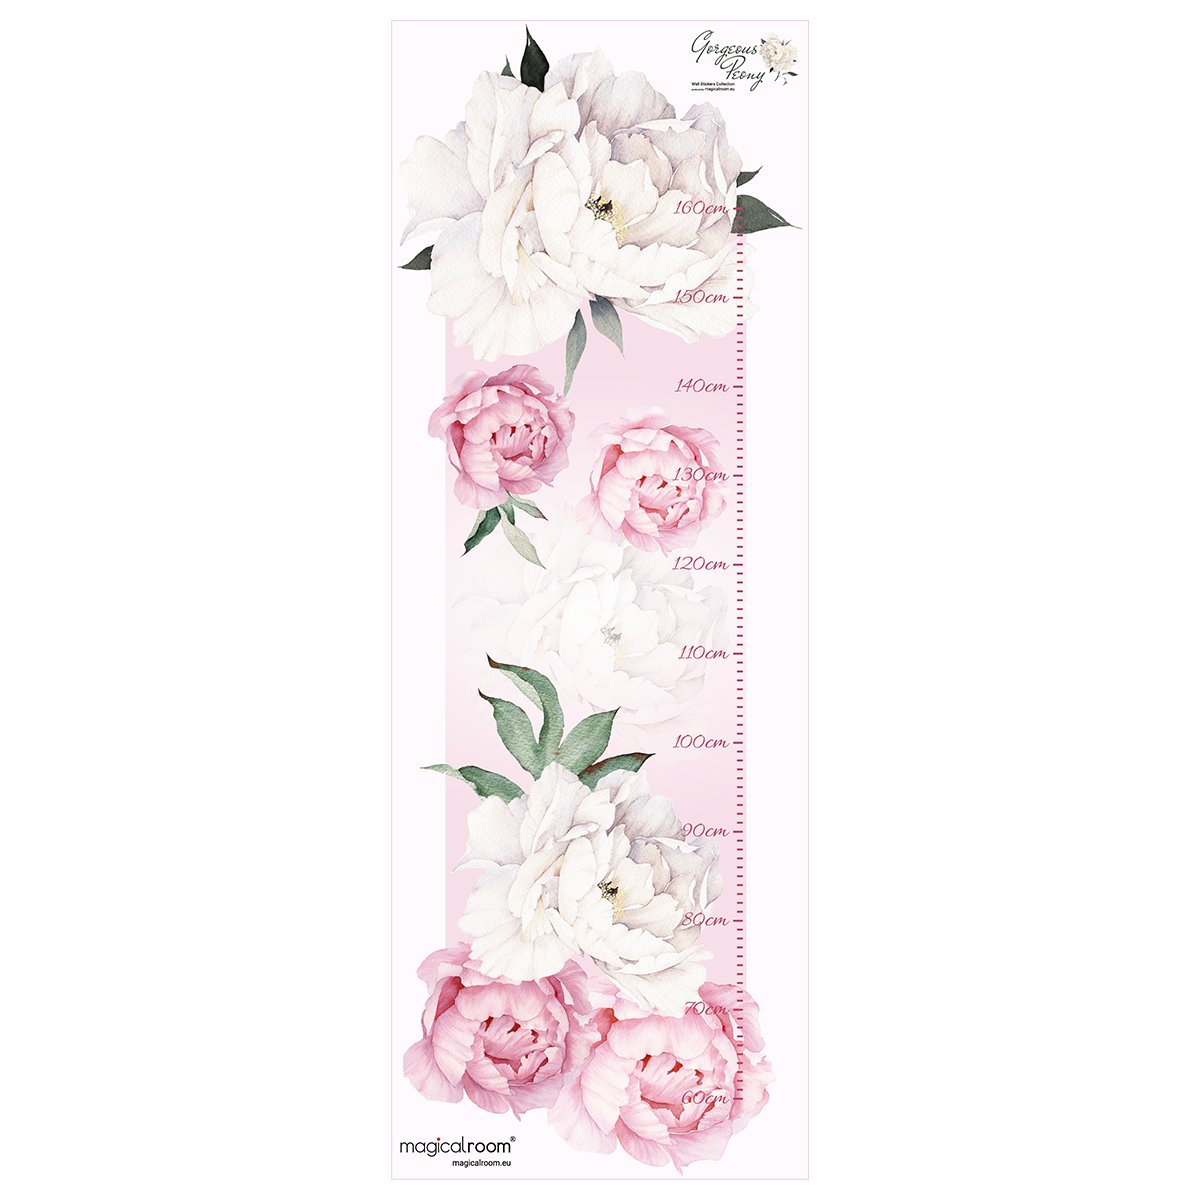 Naklejka na ścianę miarka wzrostu dla dzieci - różowe i białe kwiaty#kolor_rozowy